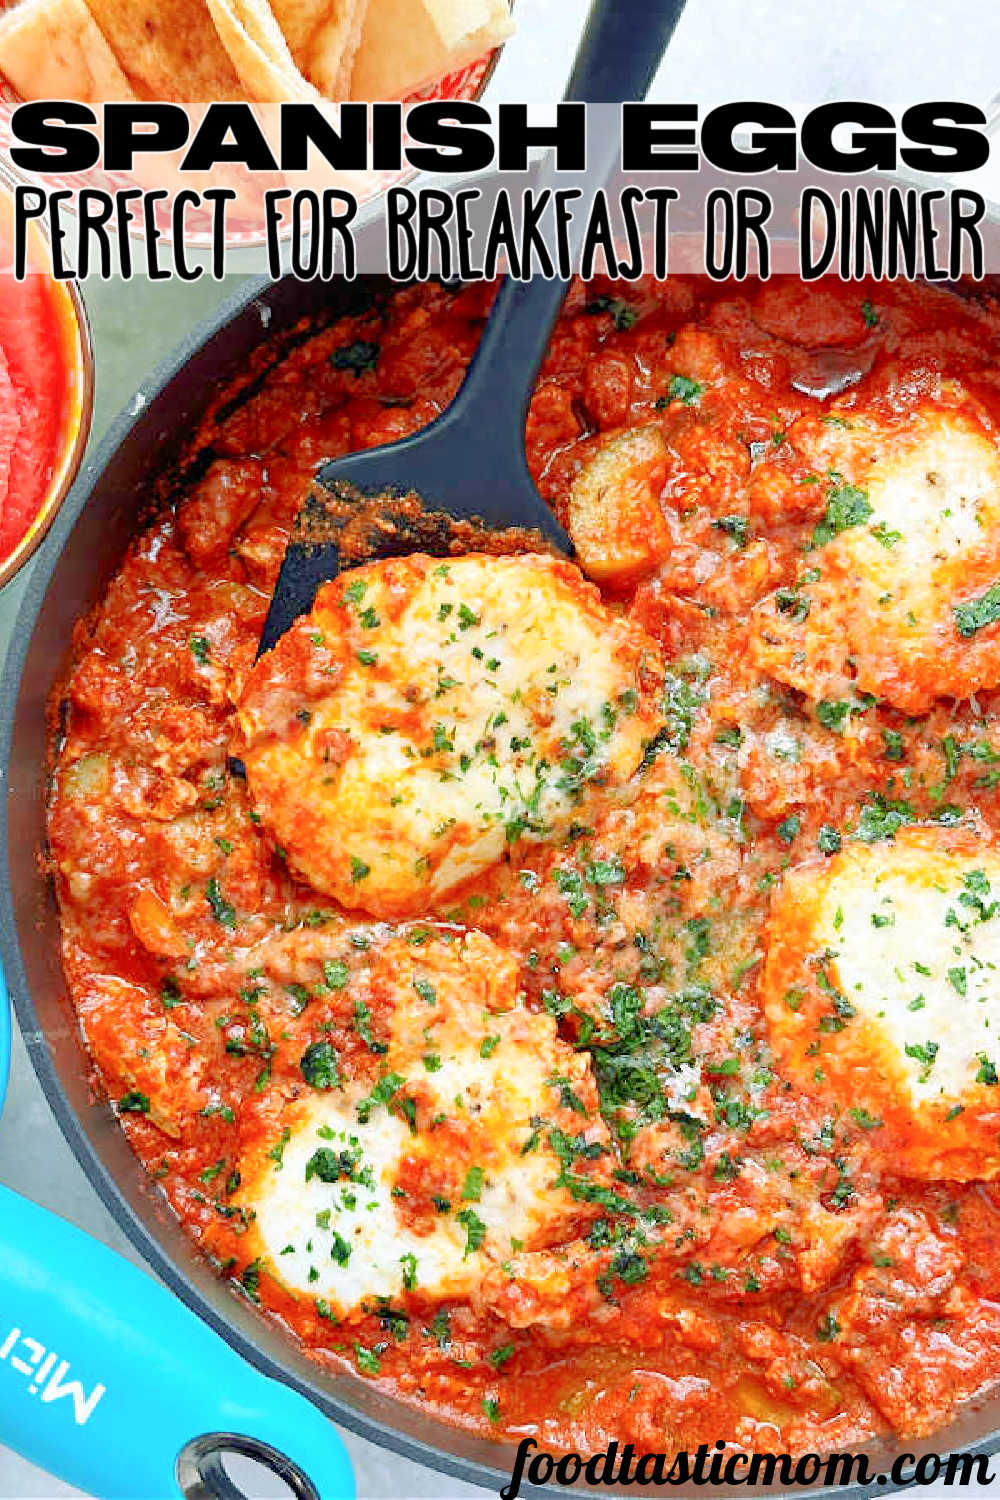 Spanish Eggs | Foodtastic Mom #spanisheggs #eggrecipes via @foodtasticmom